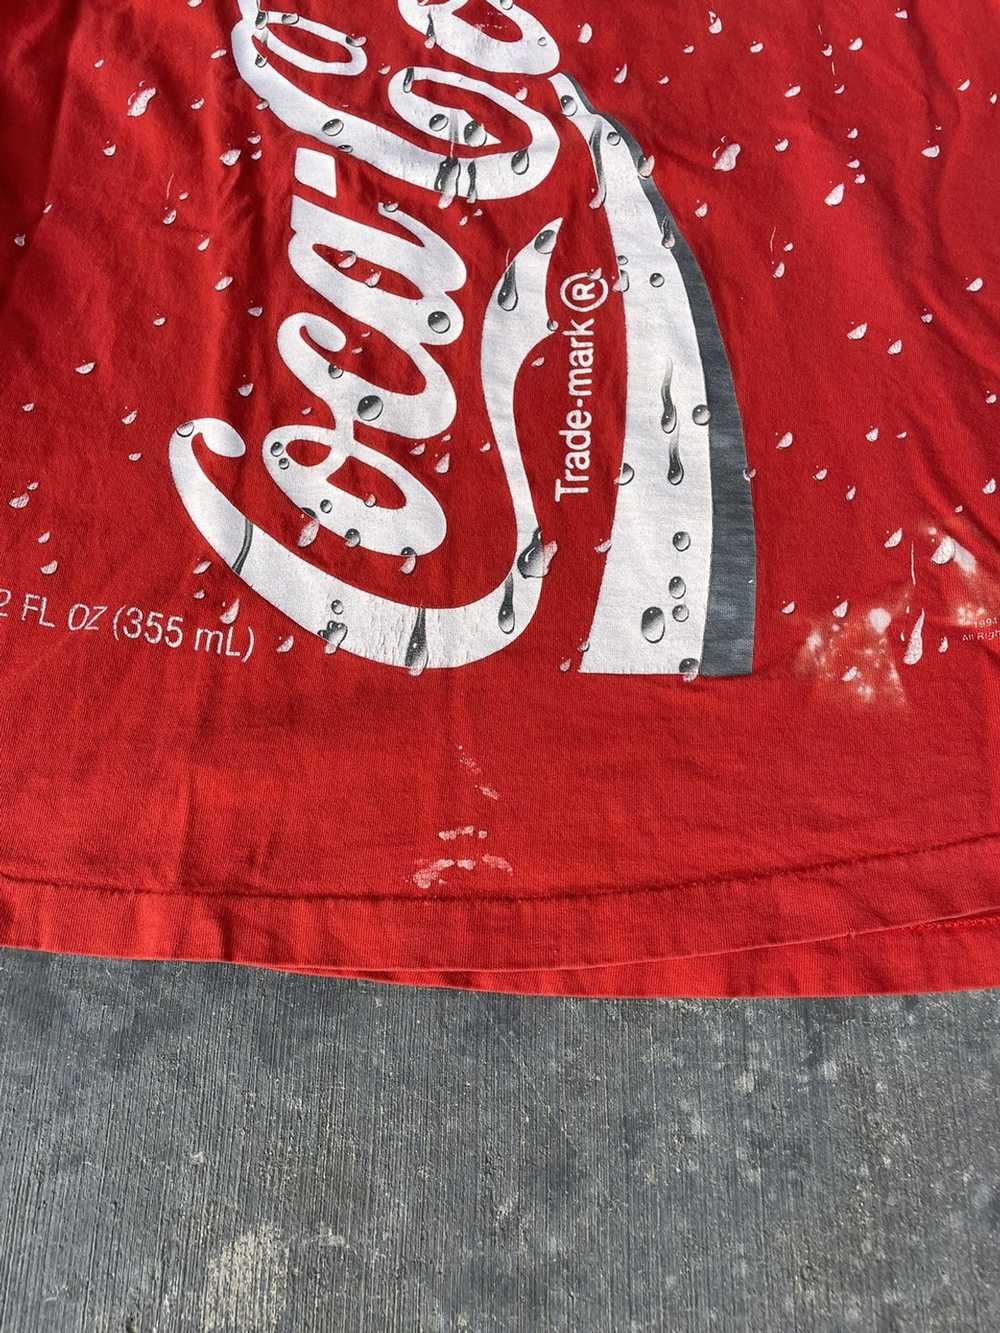 Coca Cola × Vintage Vintage 1994 Coca Cola T-Shirt - image 4